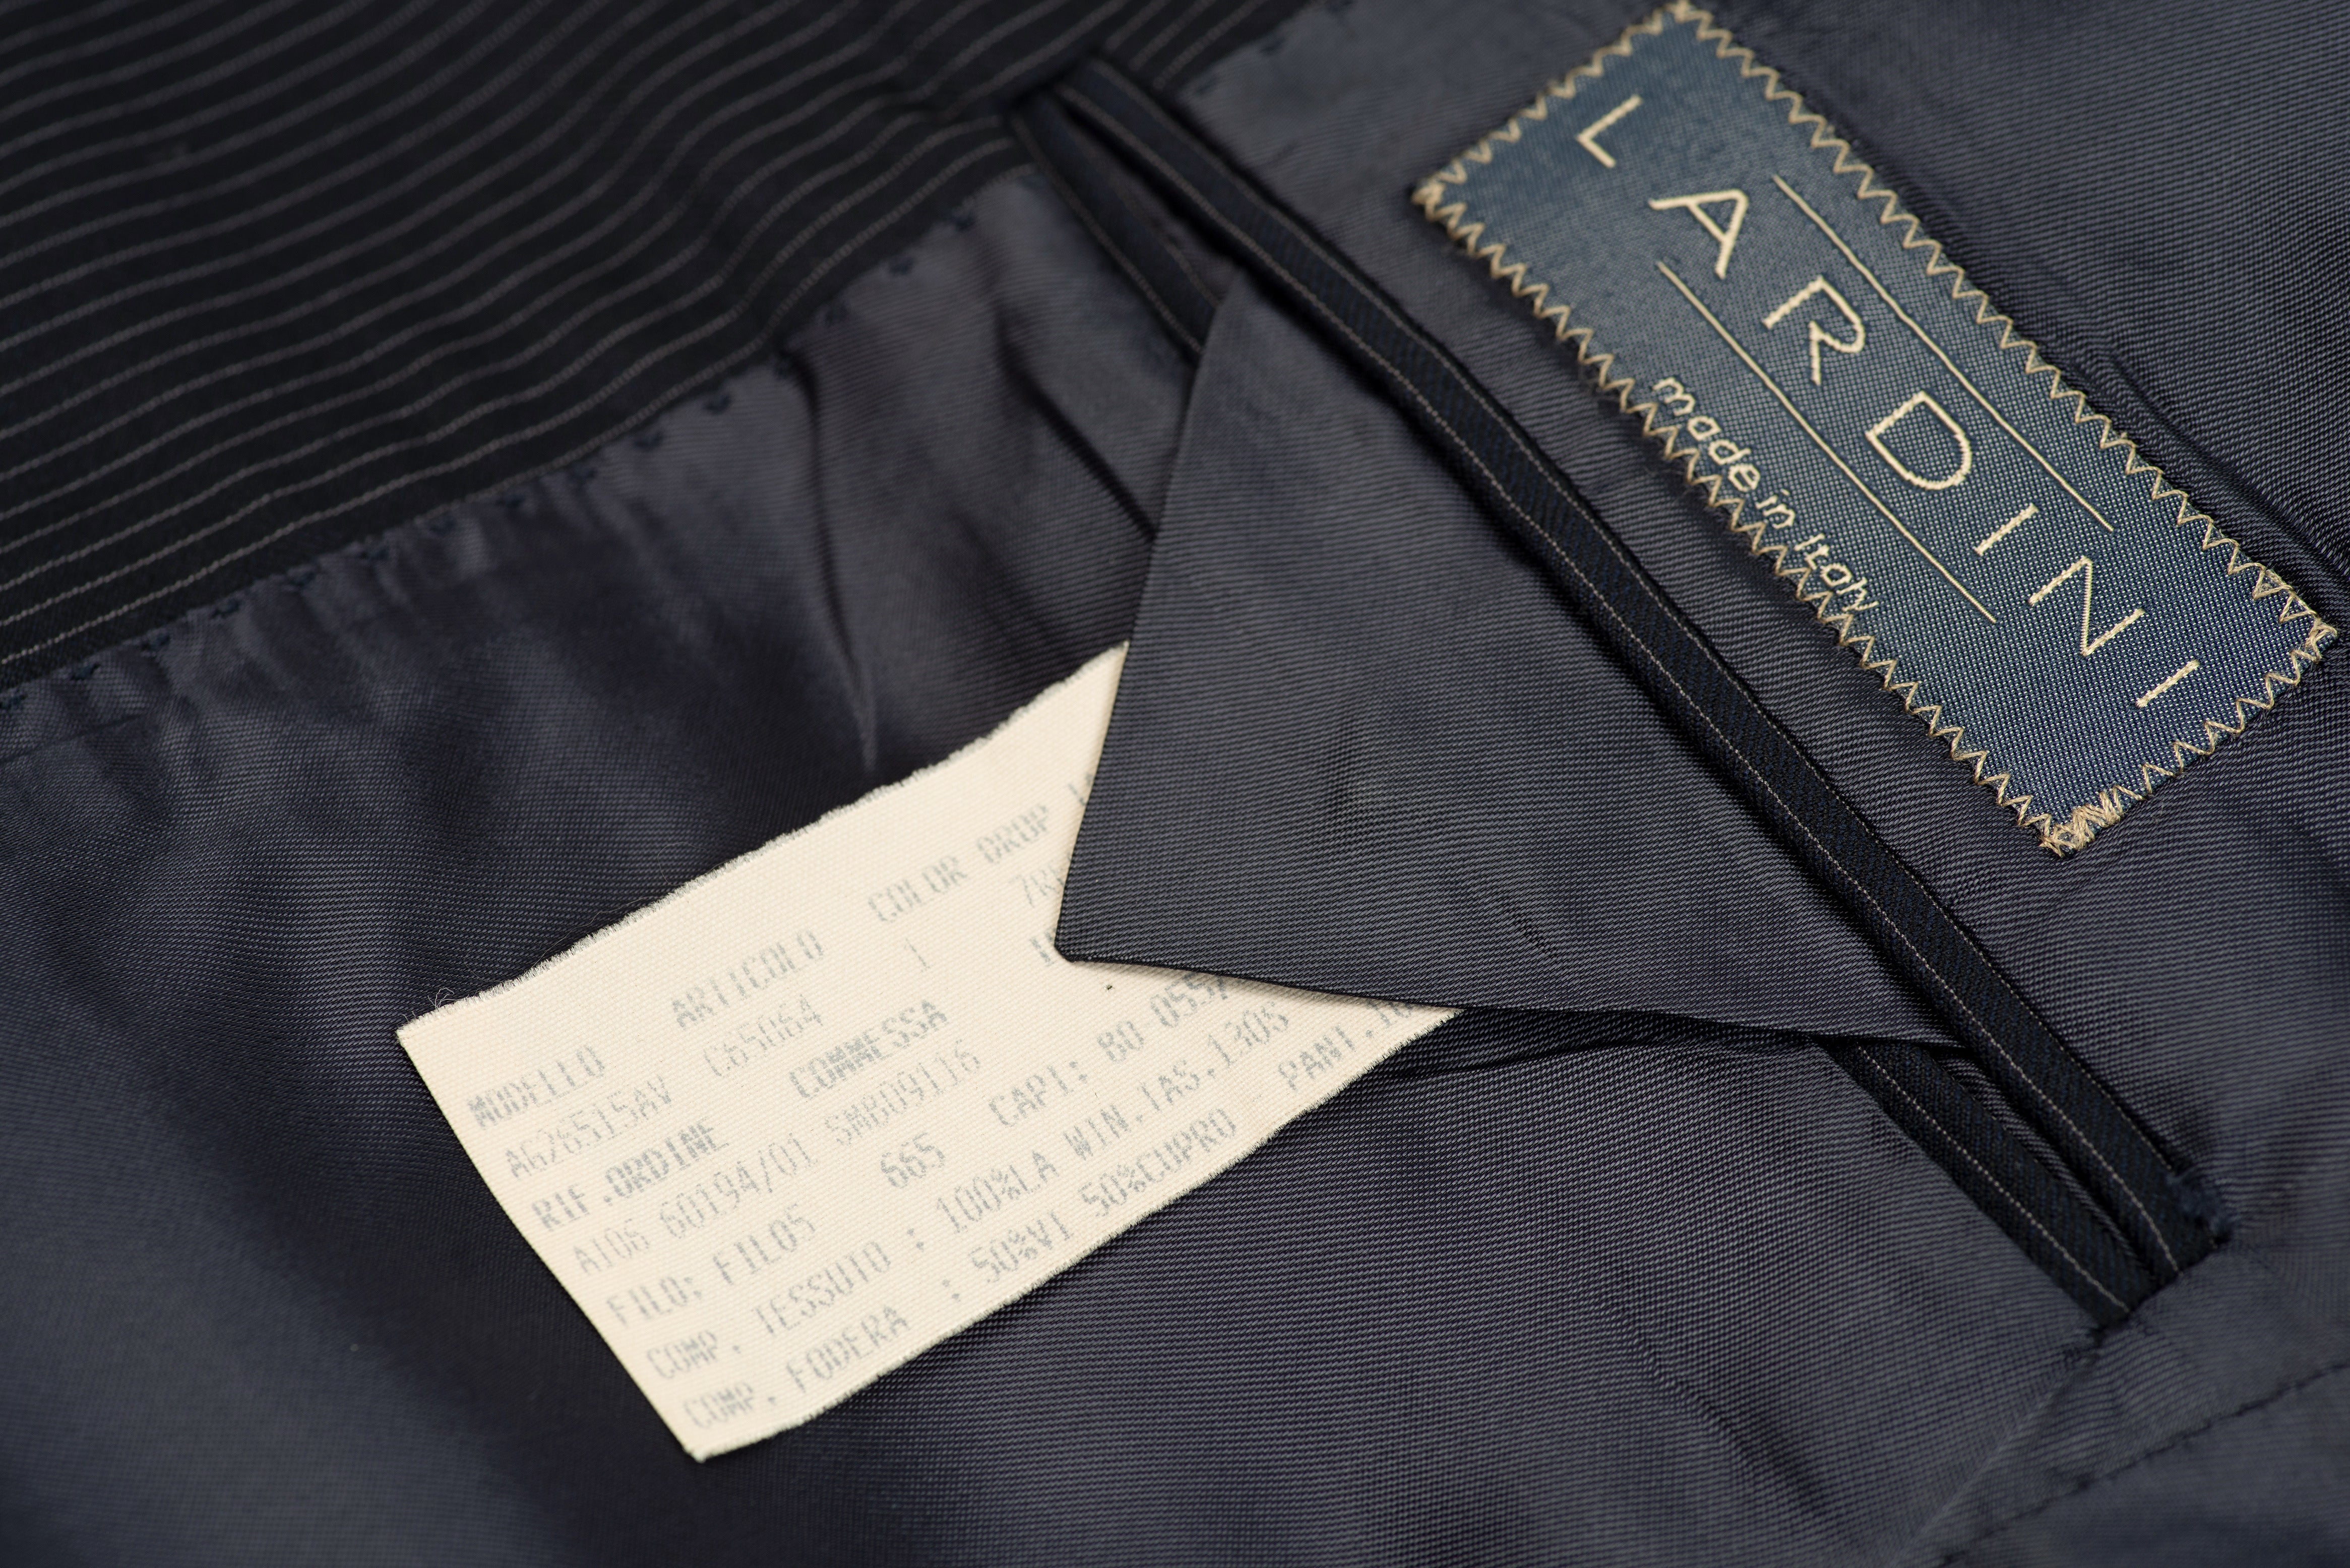 Lardini Super 130's Wool Navy Blue Striped 2 Pieces Suit, US 36R, EU 46R